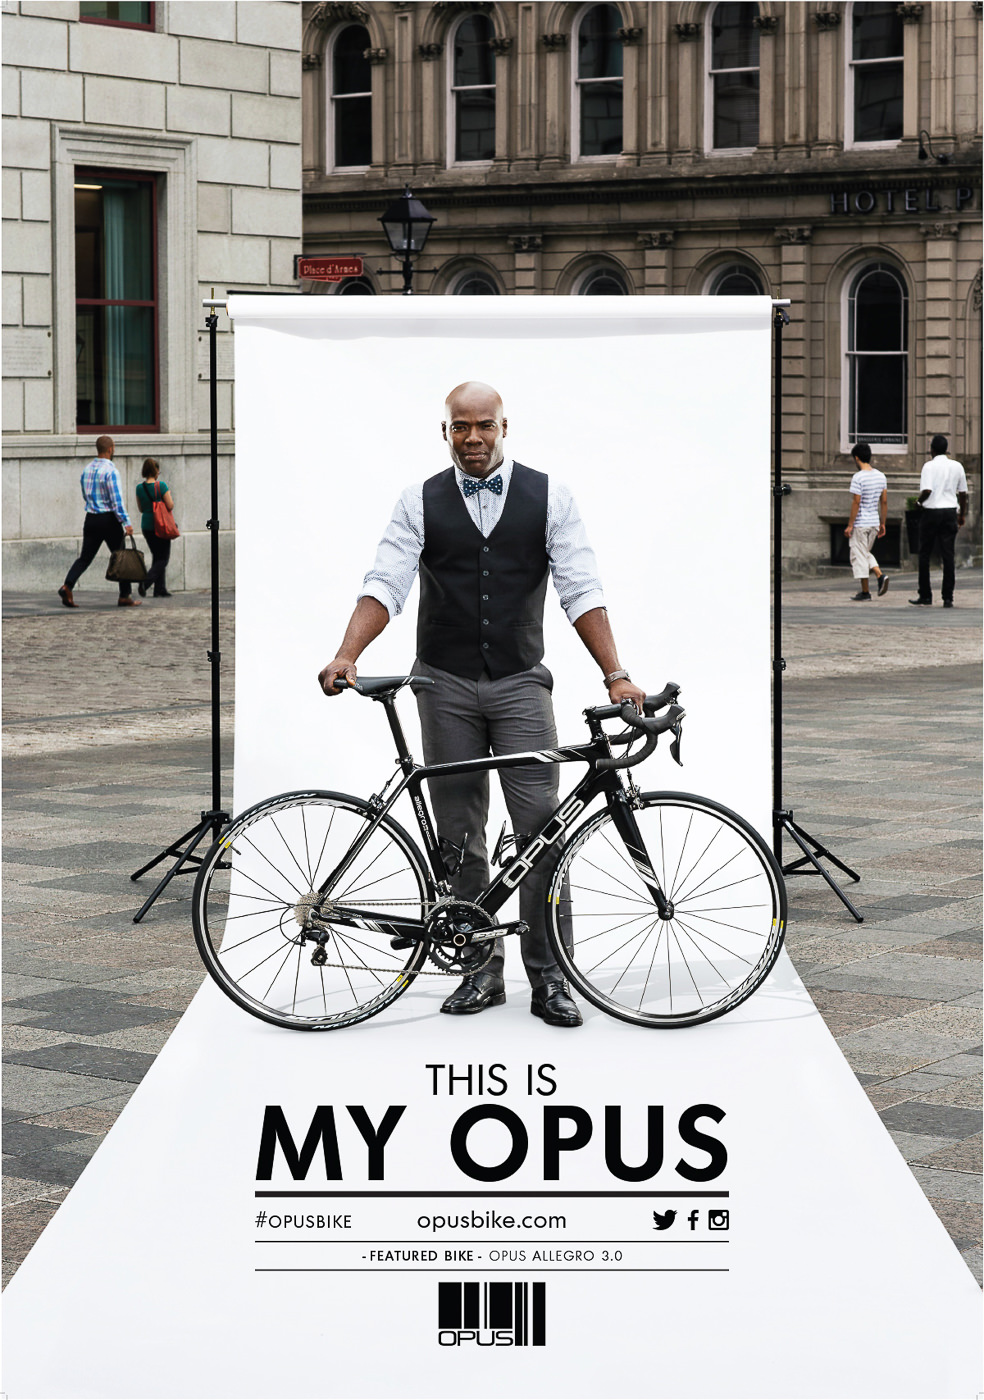 Affiche publicitaire pour vélo Opus bike modele Allegro 3.0 dans le vieux port de montreal